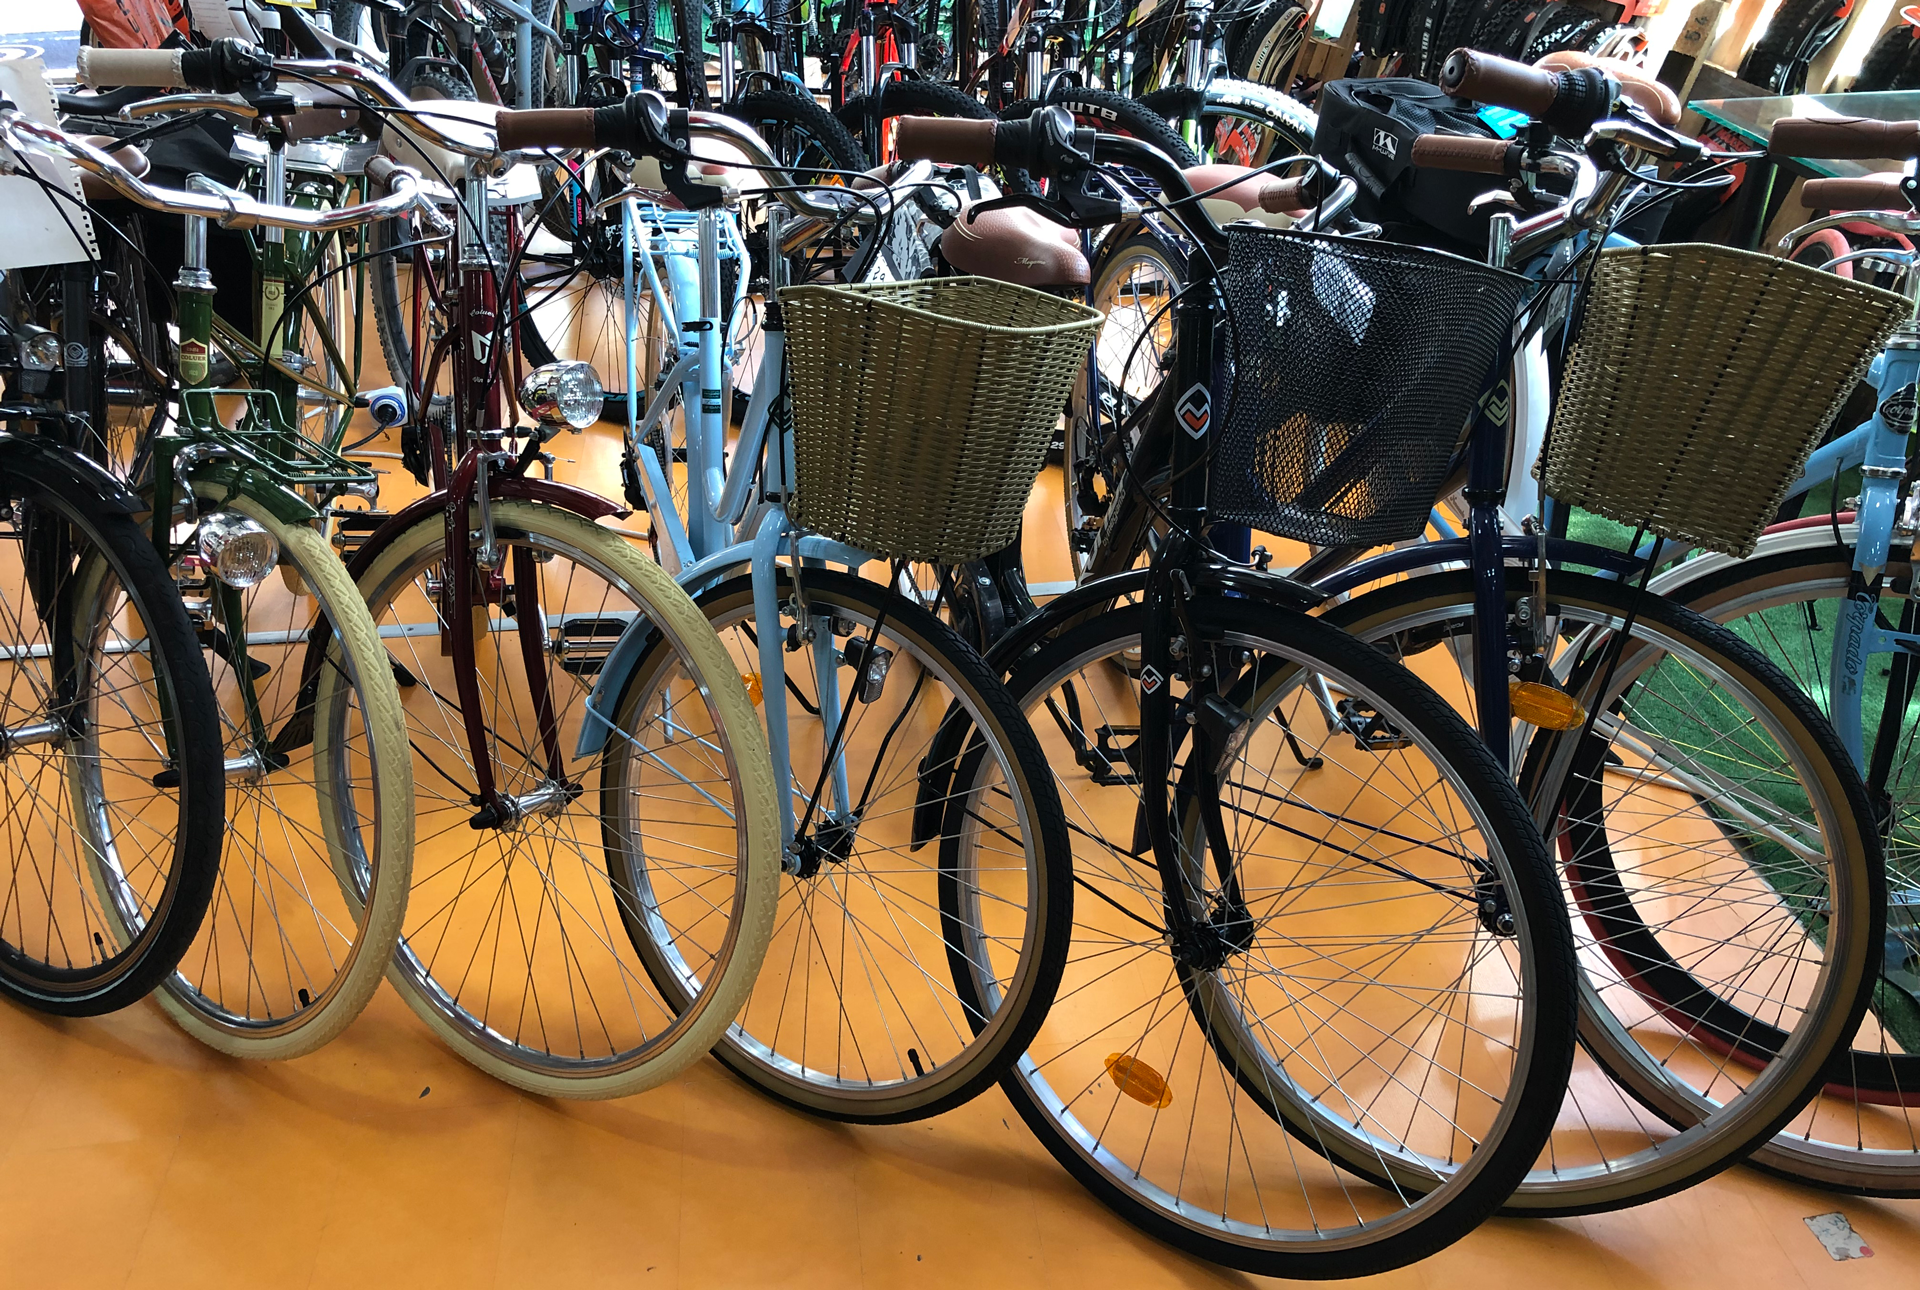 Colección de bicicletas de paseo en ciudad